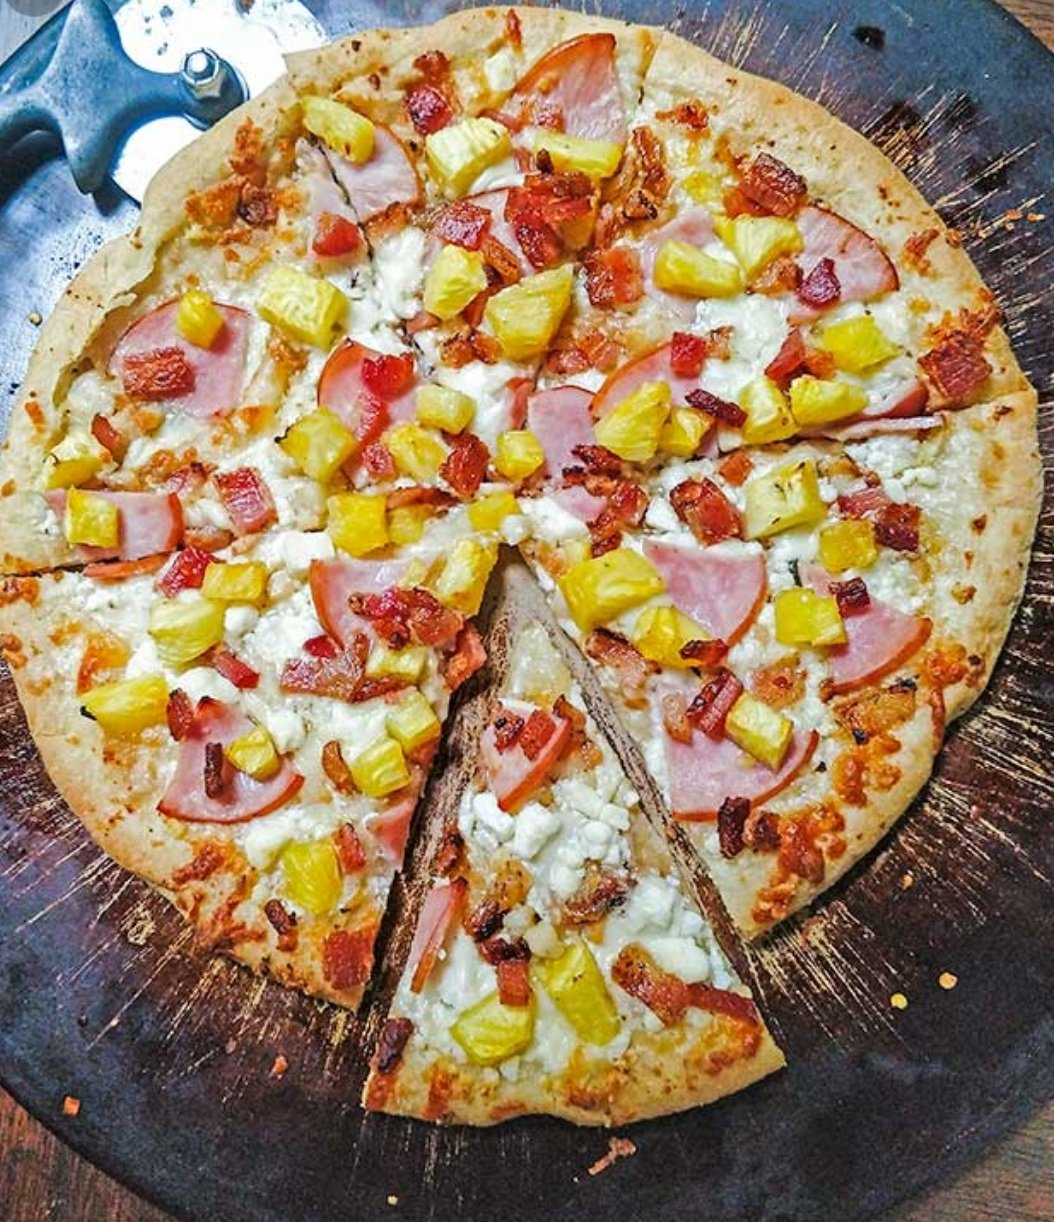 фото гавайская пицца с ананасами фото 81